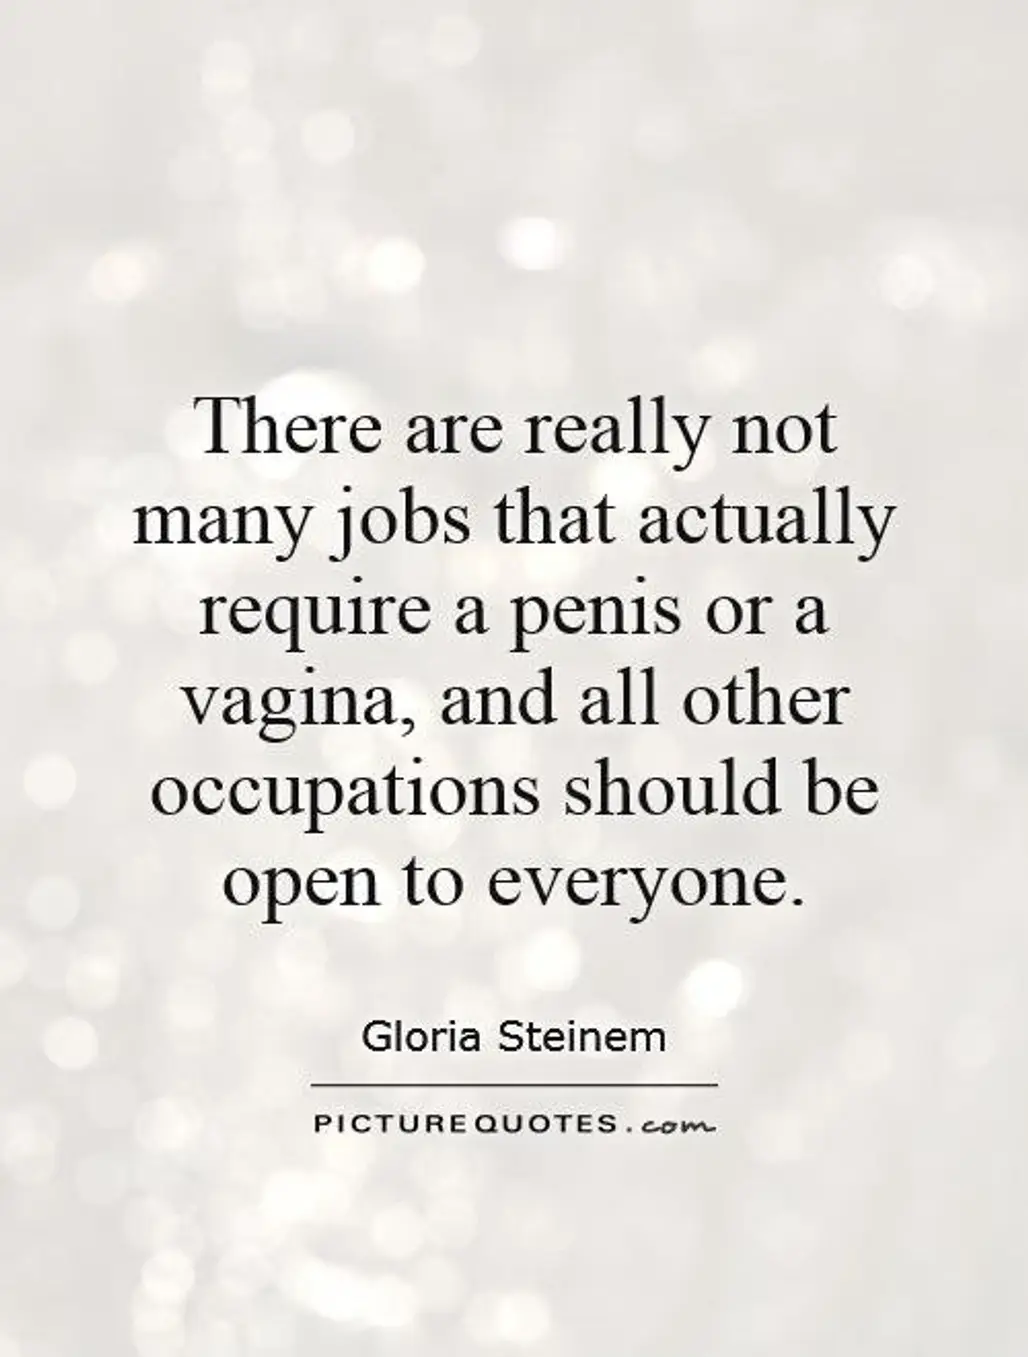 Vaginas Won't Determine Your Career